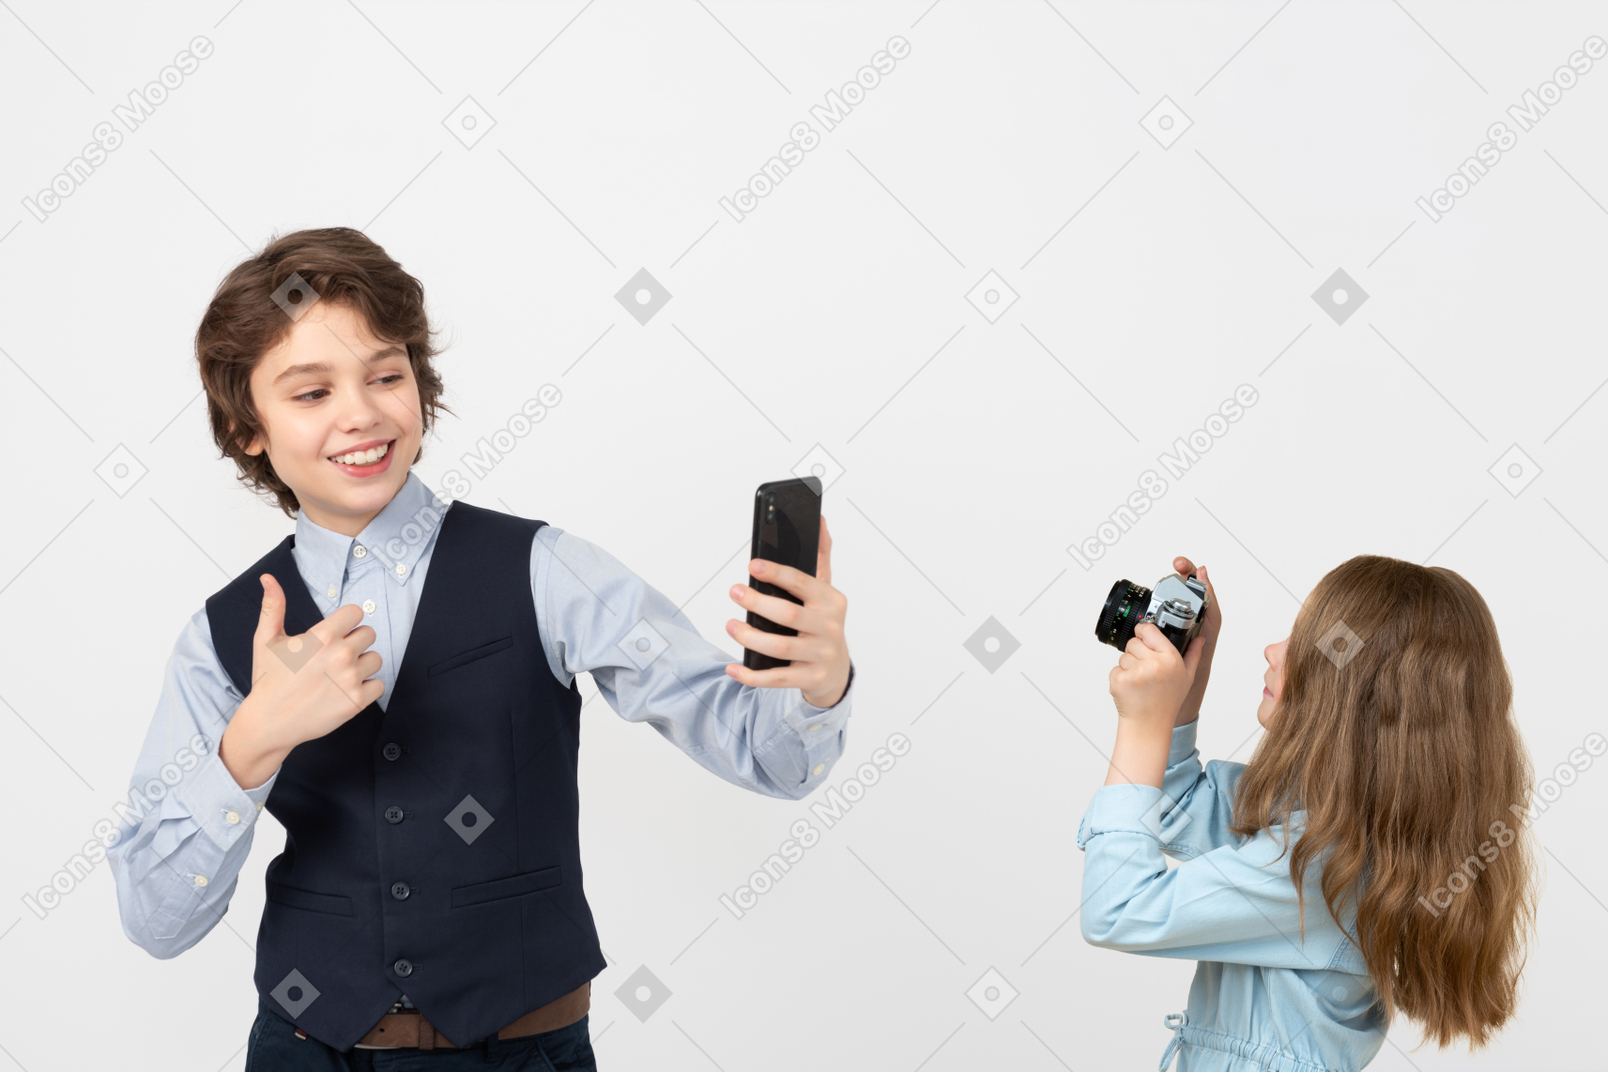 Children nowadays using gadgets